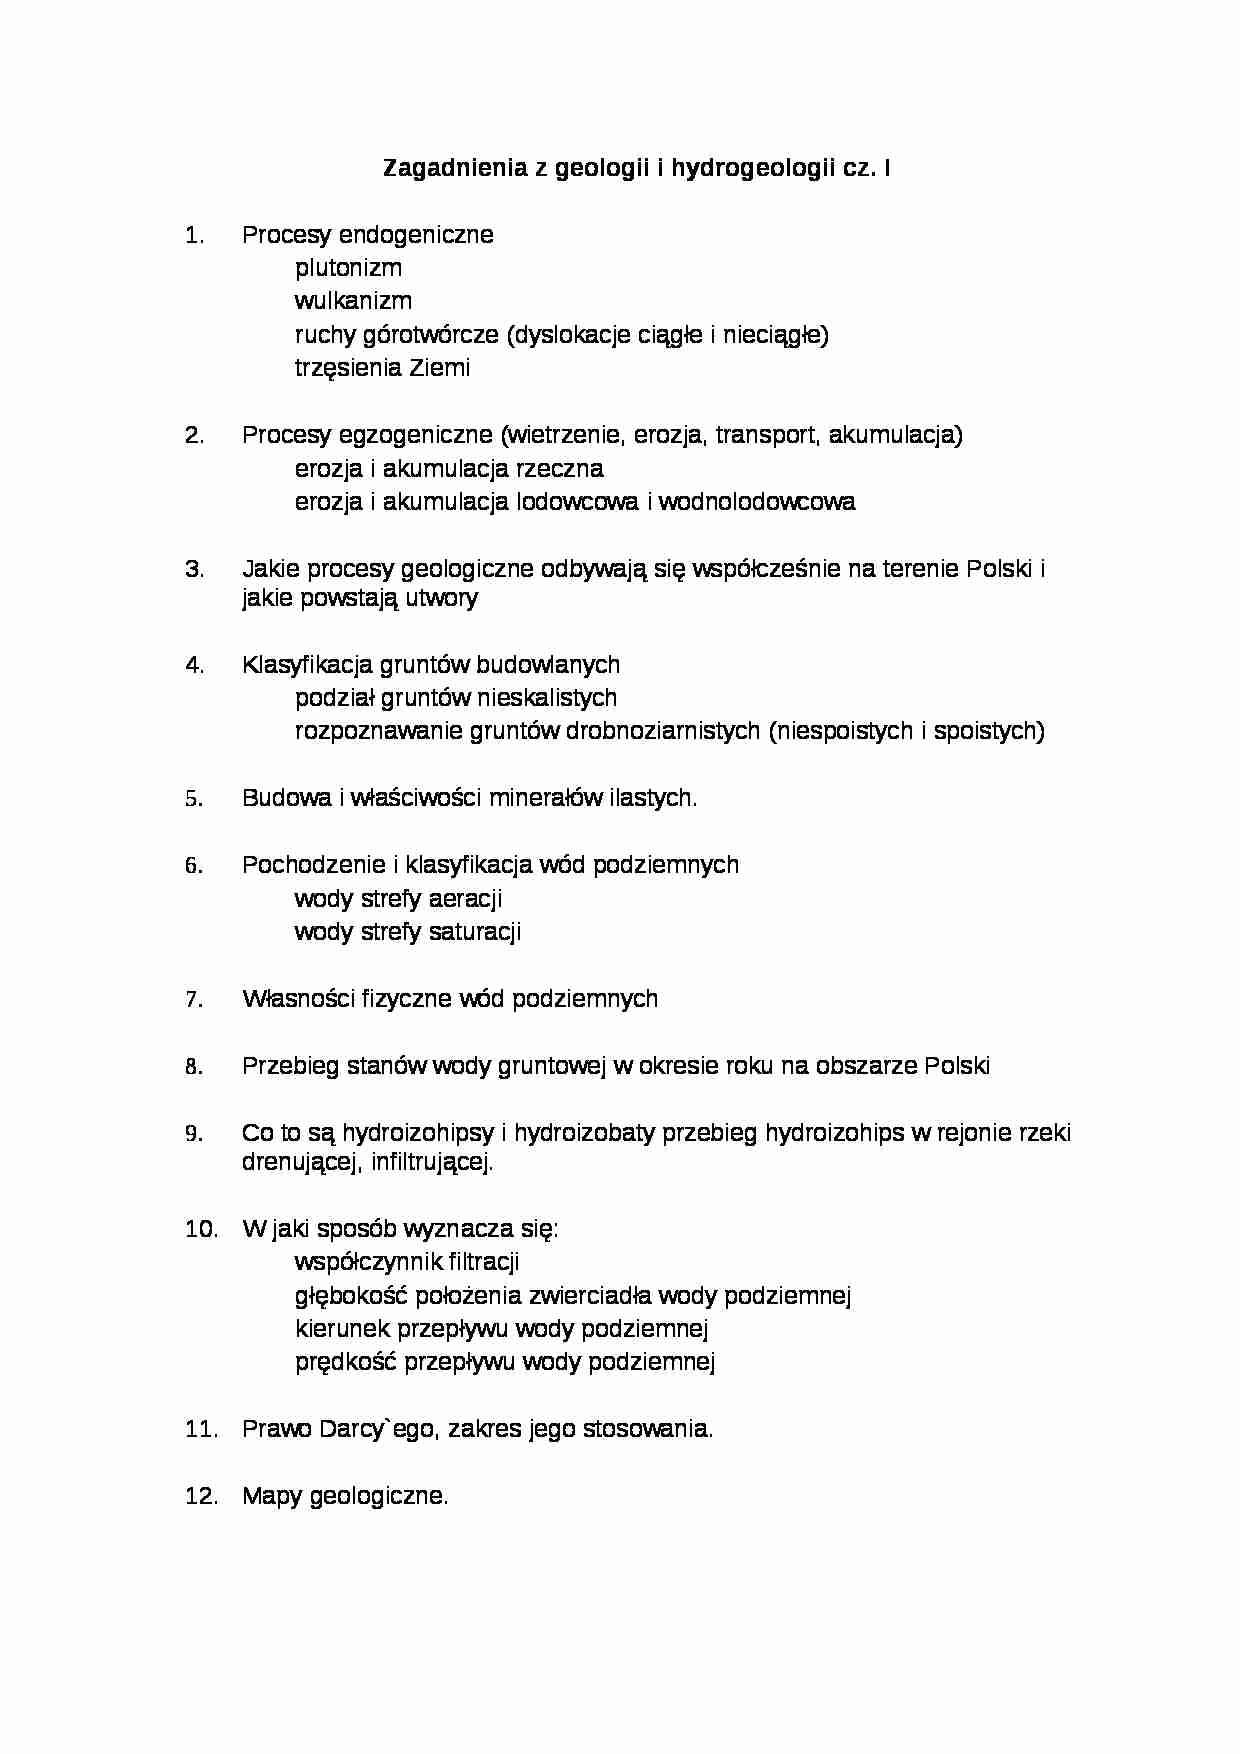 Zagadnienia z geologii i hydrogeologii cz.I 2012 - strona 1